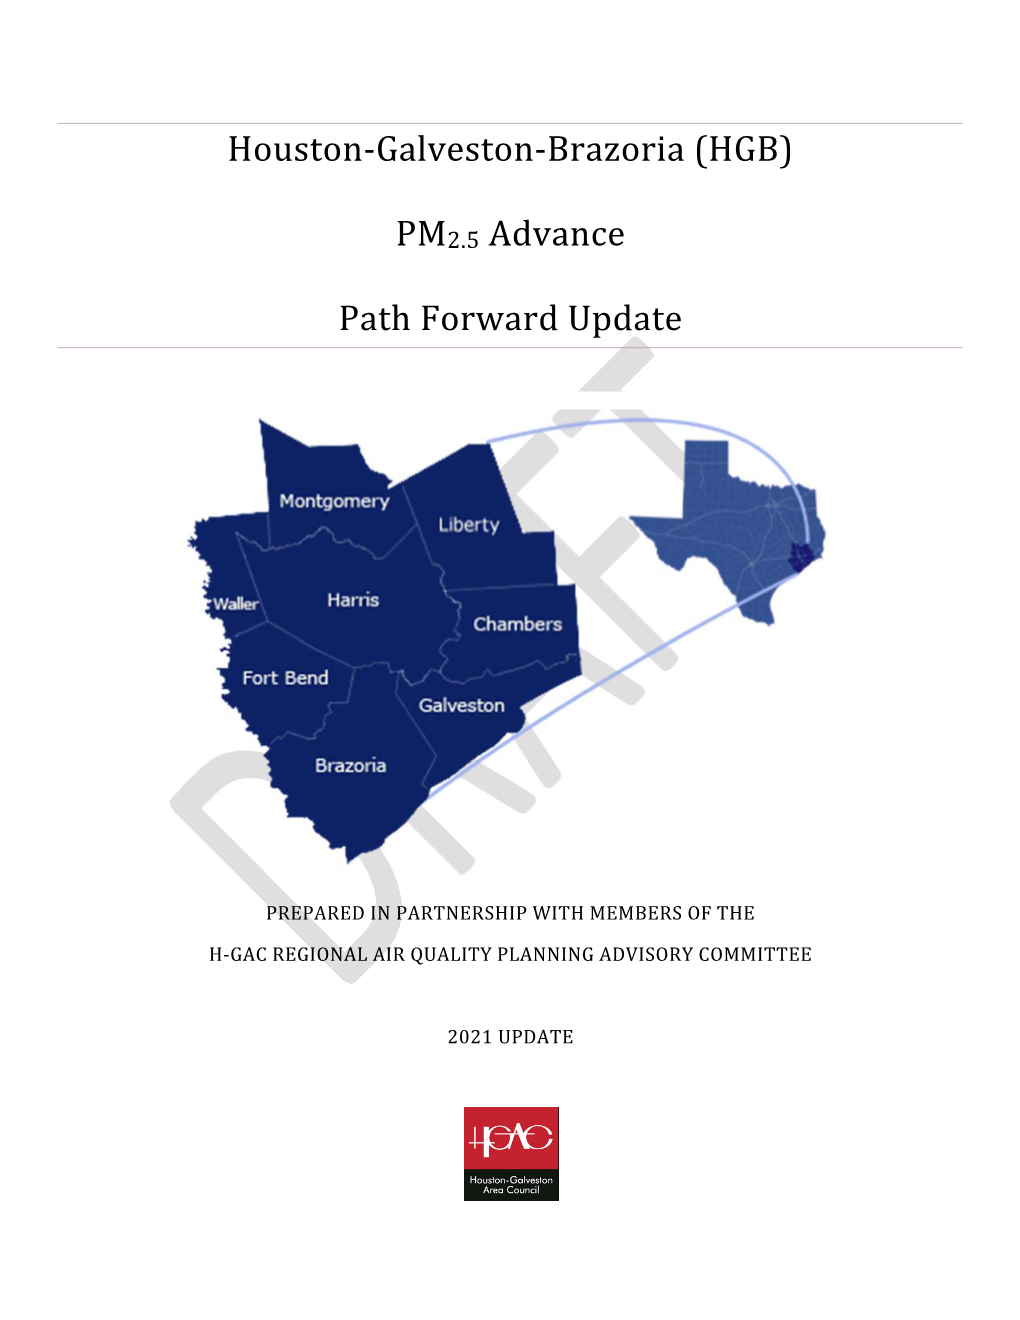 PM2.5 Advance Path Forward Update